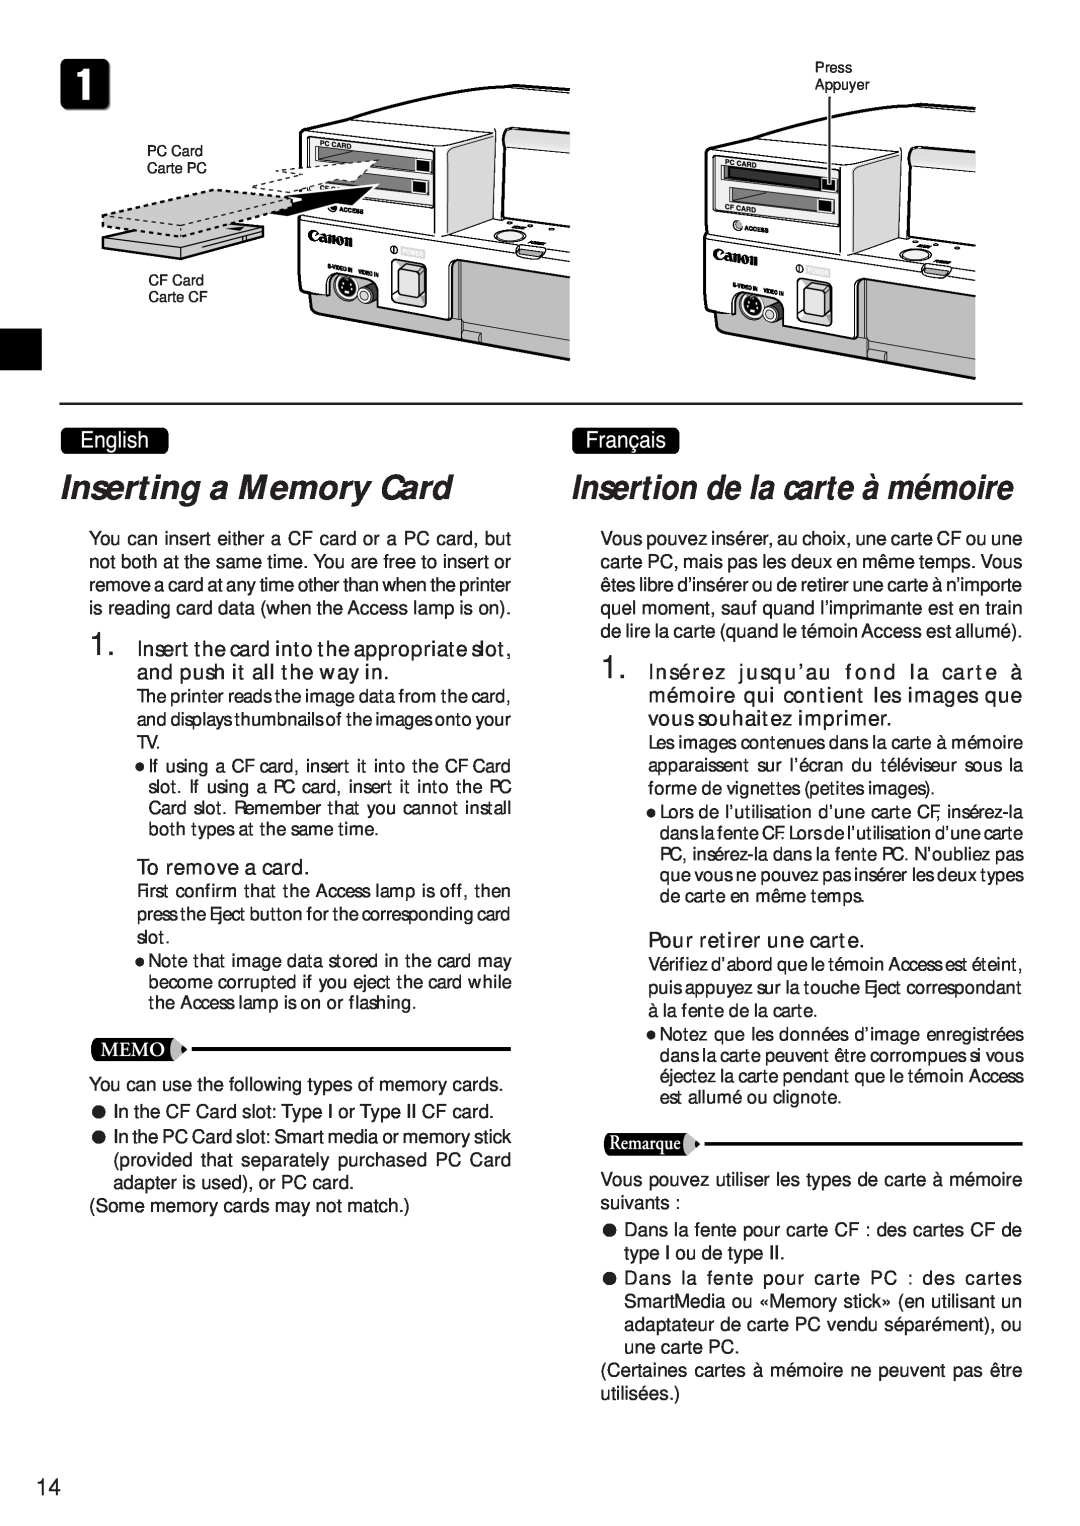 Canon CD-300 manual Inserting a Memory Card, Insertion de la carte à mémoire 